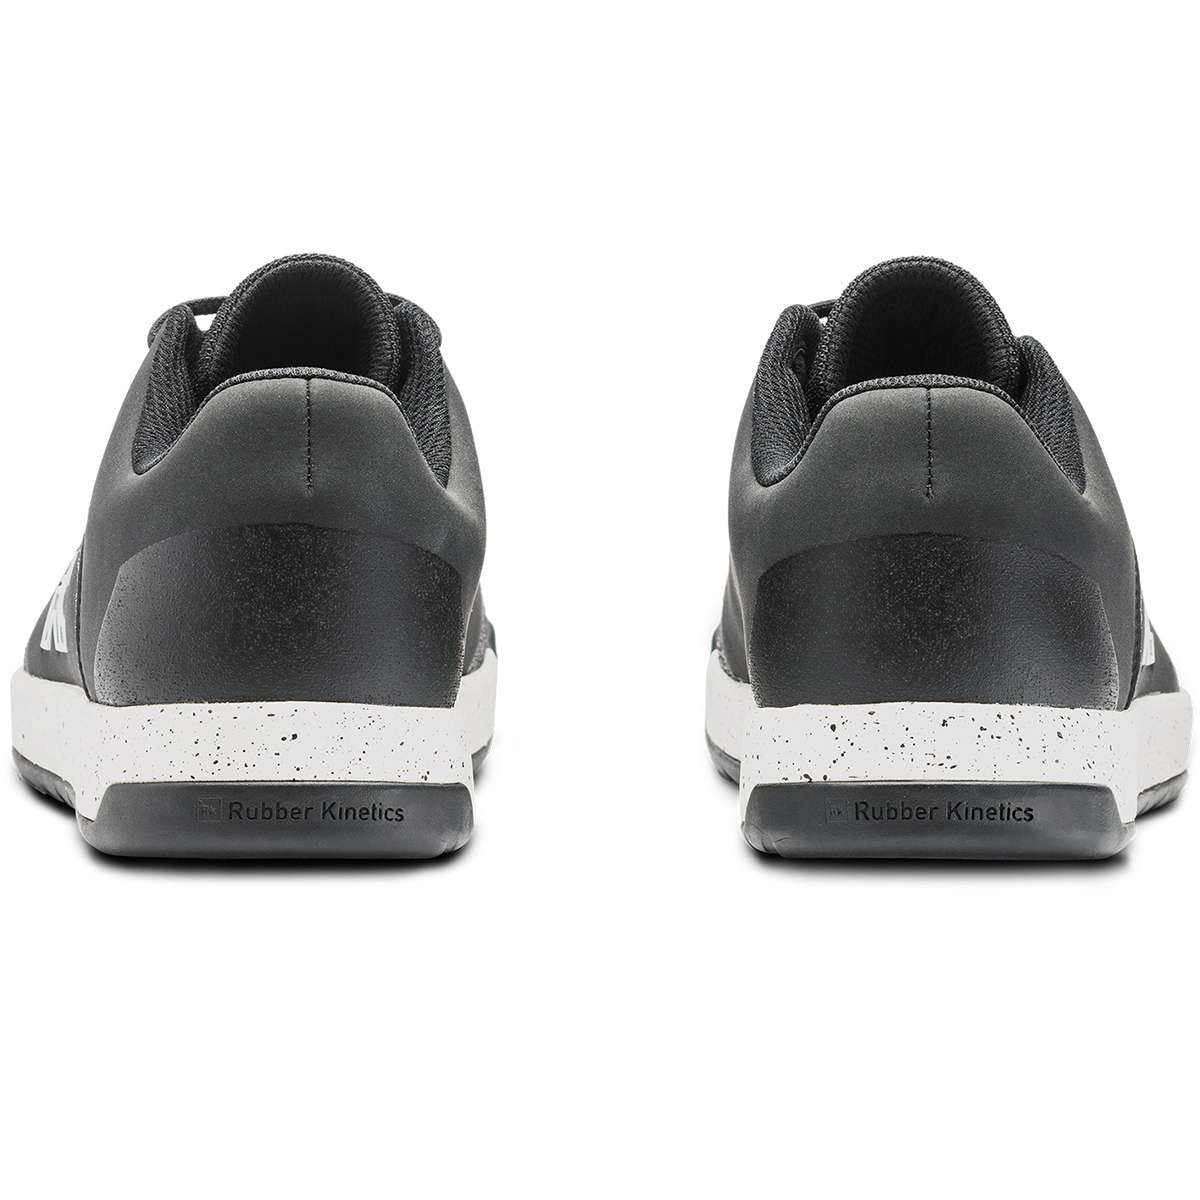 Ride Concepts Hellion Elite Women's Schuh - Black/White online kaufen